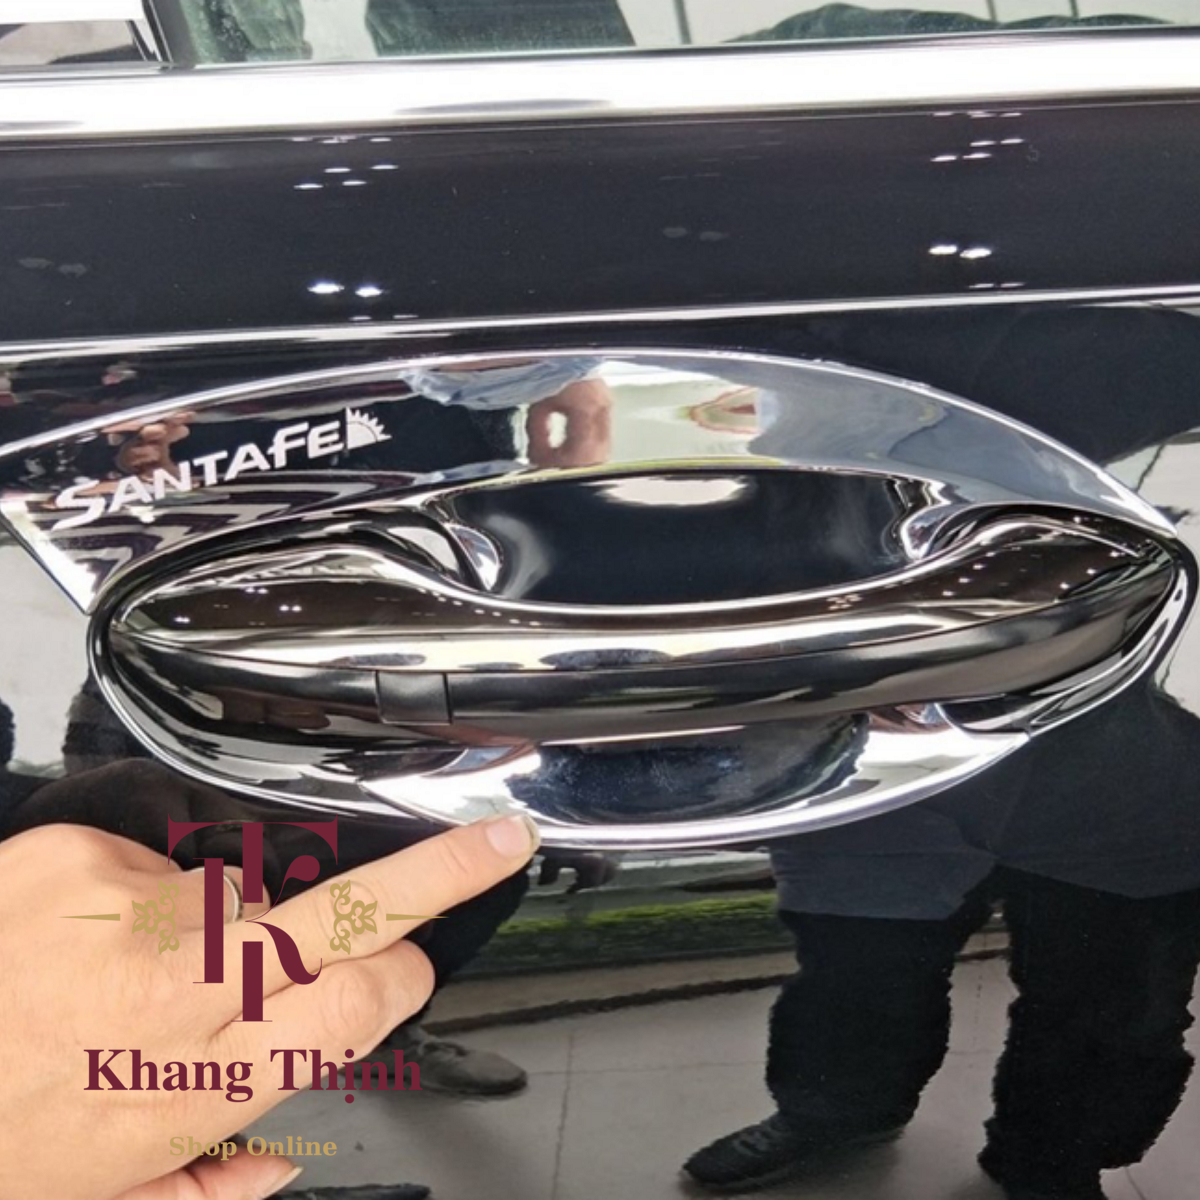 Hình ảnh Bộ Ốp Hõm Cửa Dành Cho Xe Hyundai Santafe 2021 Mạ Crom Cao Cấp